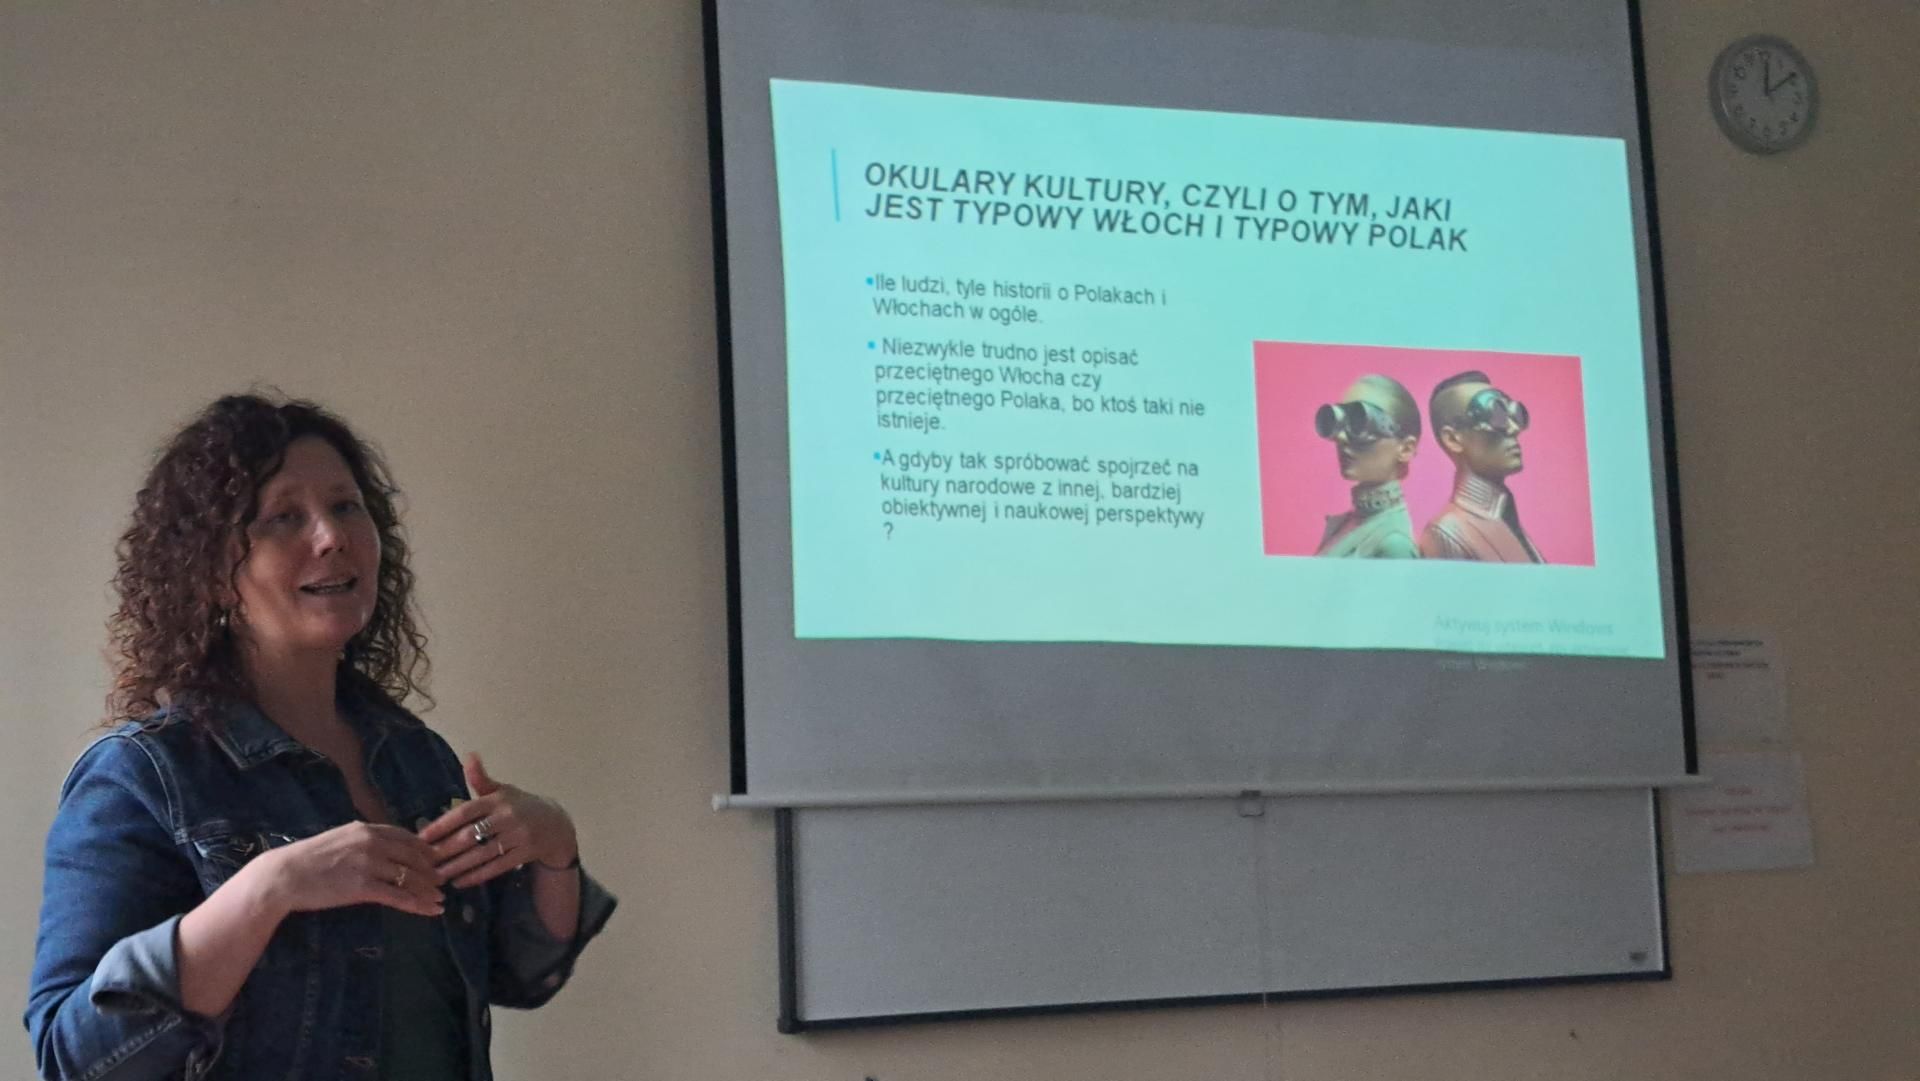 Zdjęcie przedstawia slajd z informacją, że osoba prowadząca wykład mówi o programie Erasmus+. Na slajdzie widnieje tytuł "Program Erasmus+". Osoba prowadząca wykład jest widoczna na tle slajdu.